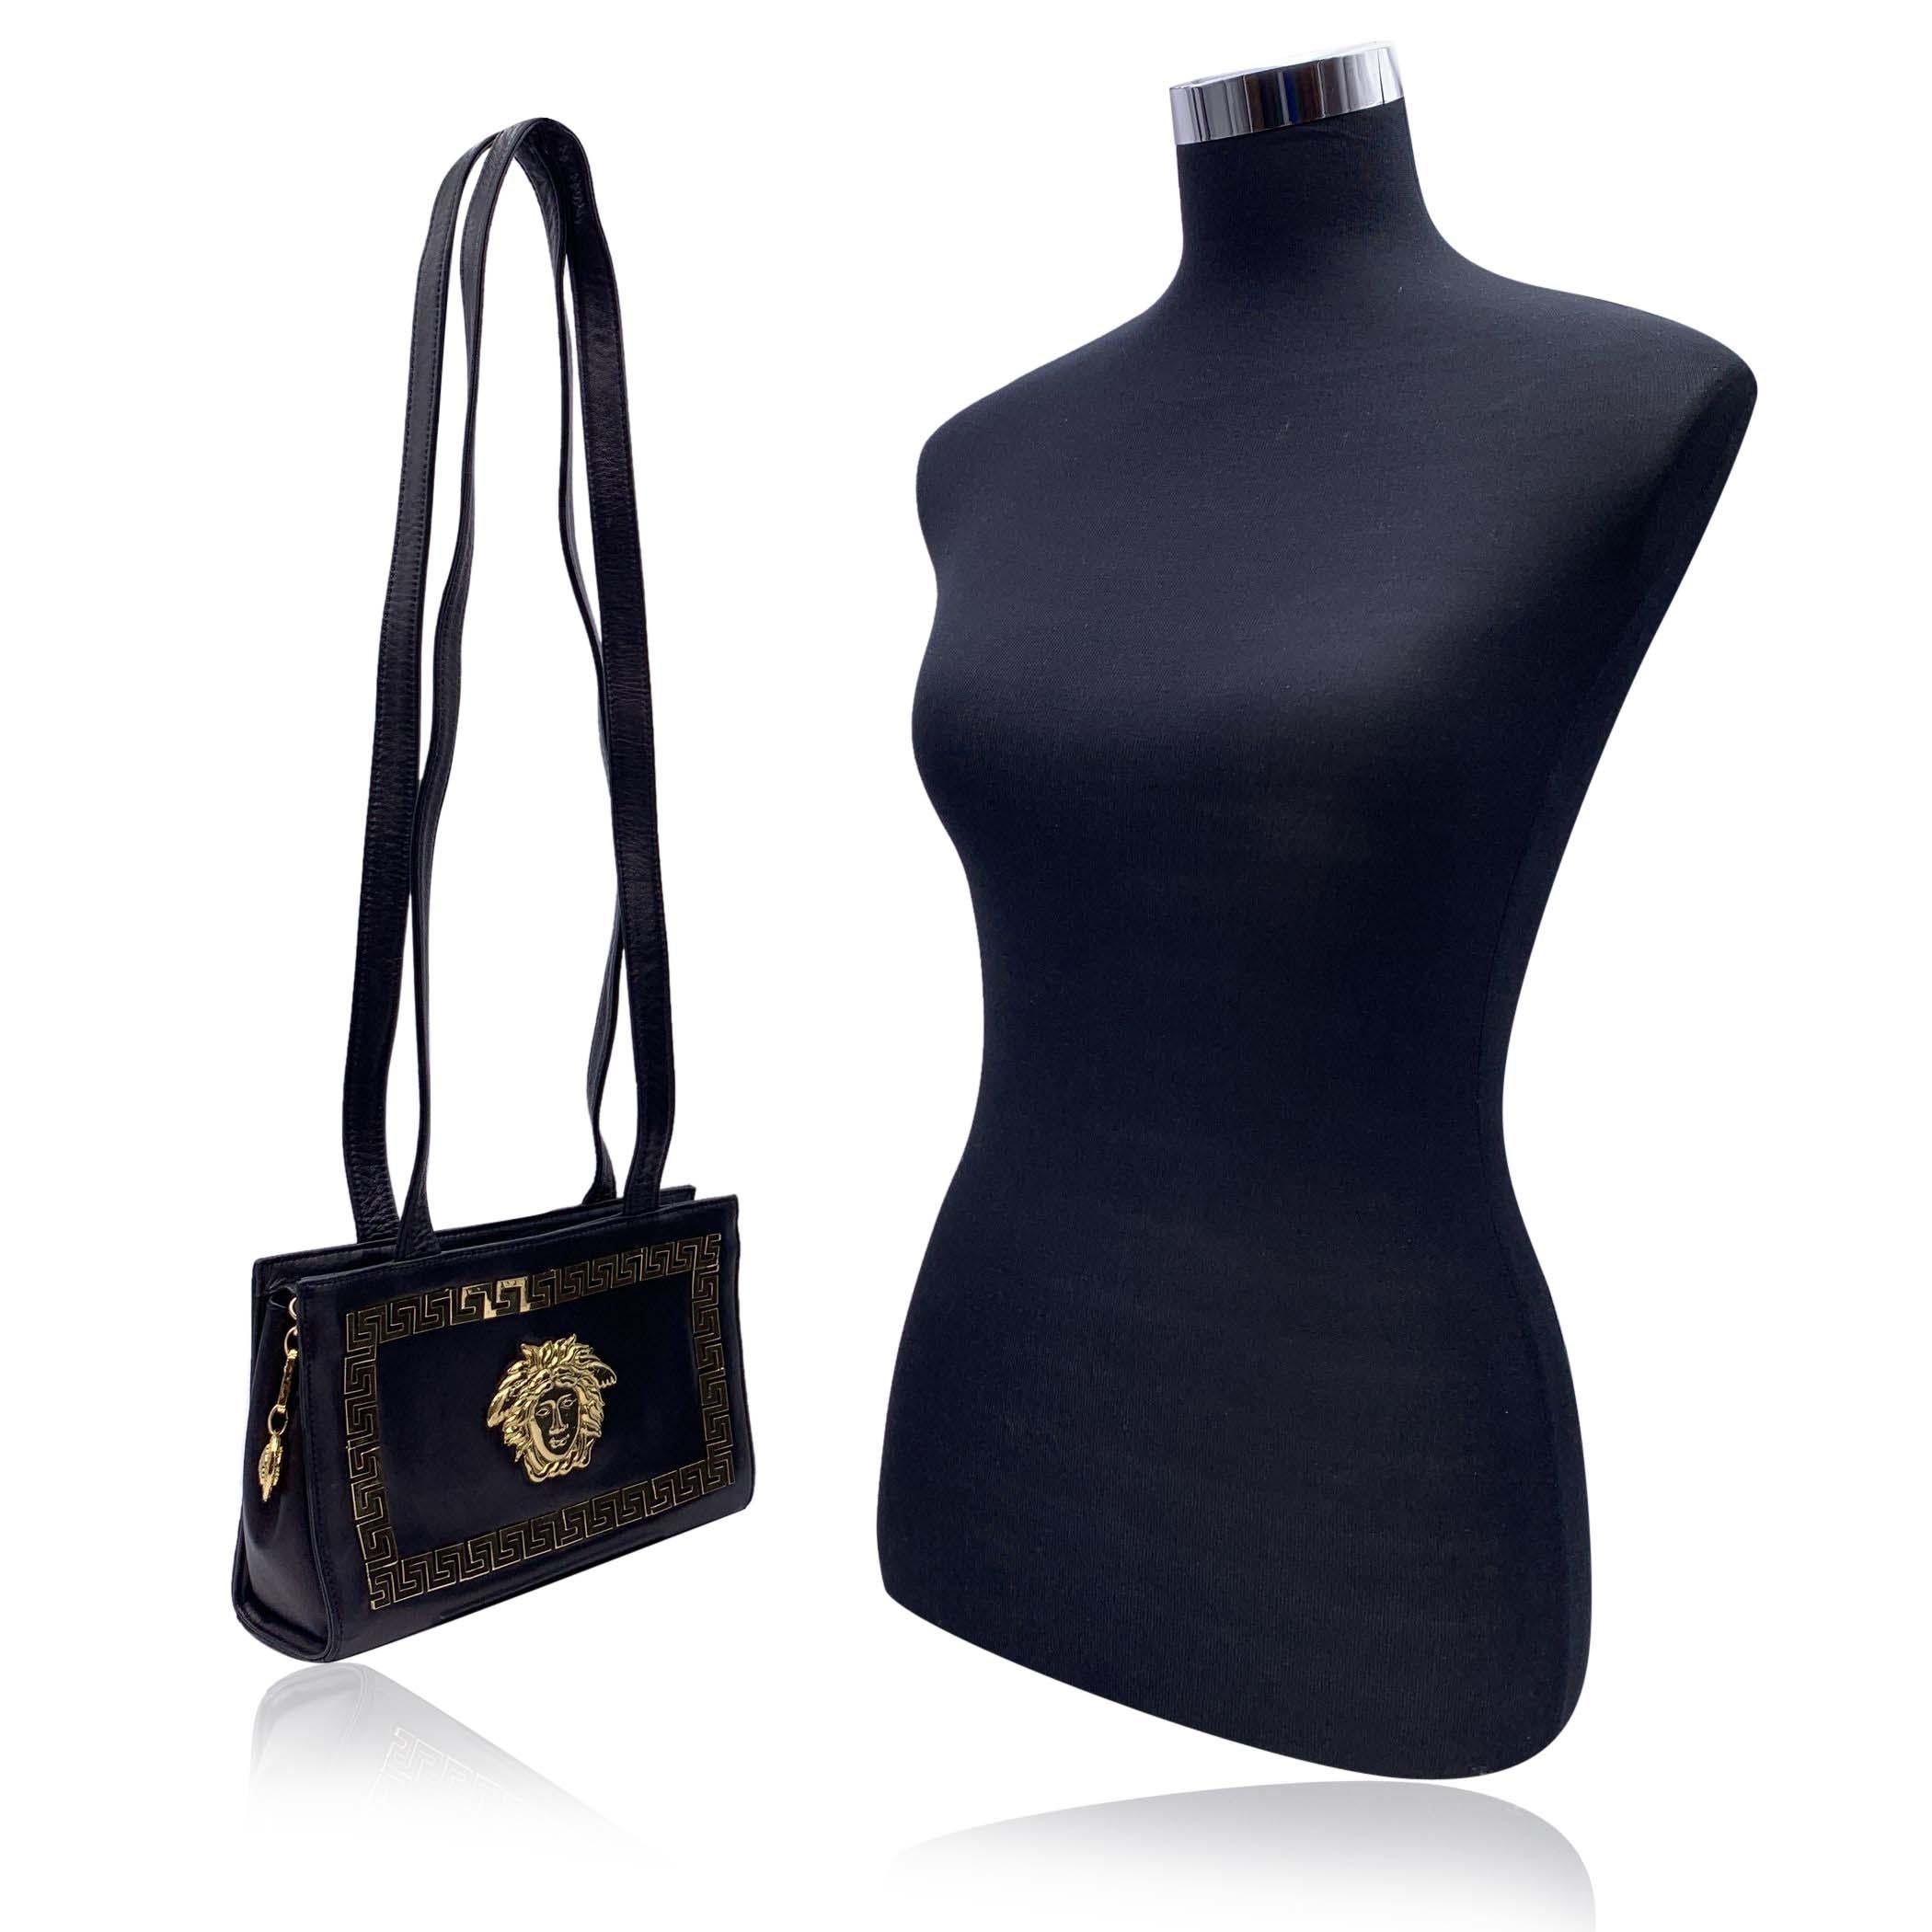 Schöne Vintage Gianni Versace Couture Umhängetasche aus den 1990er Jahren. Gefertigt aus schwarzem Leder mit großem Medusa-Logo aus goldenem Metall auf der Vorderseite und griechischem Schlüsselrand. Lange Schulterriemen. Oberer Reißverschluss mit